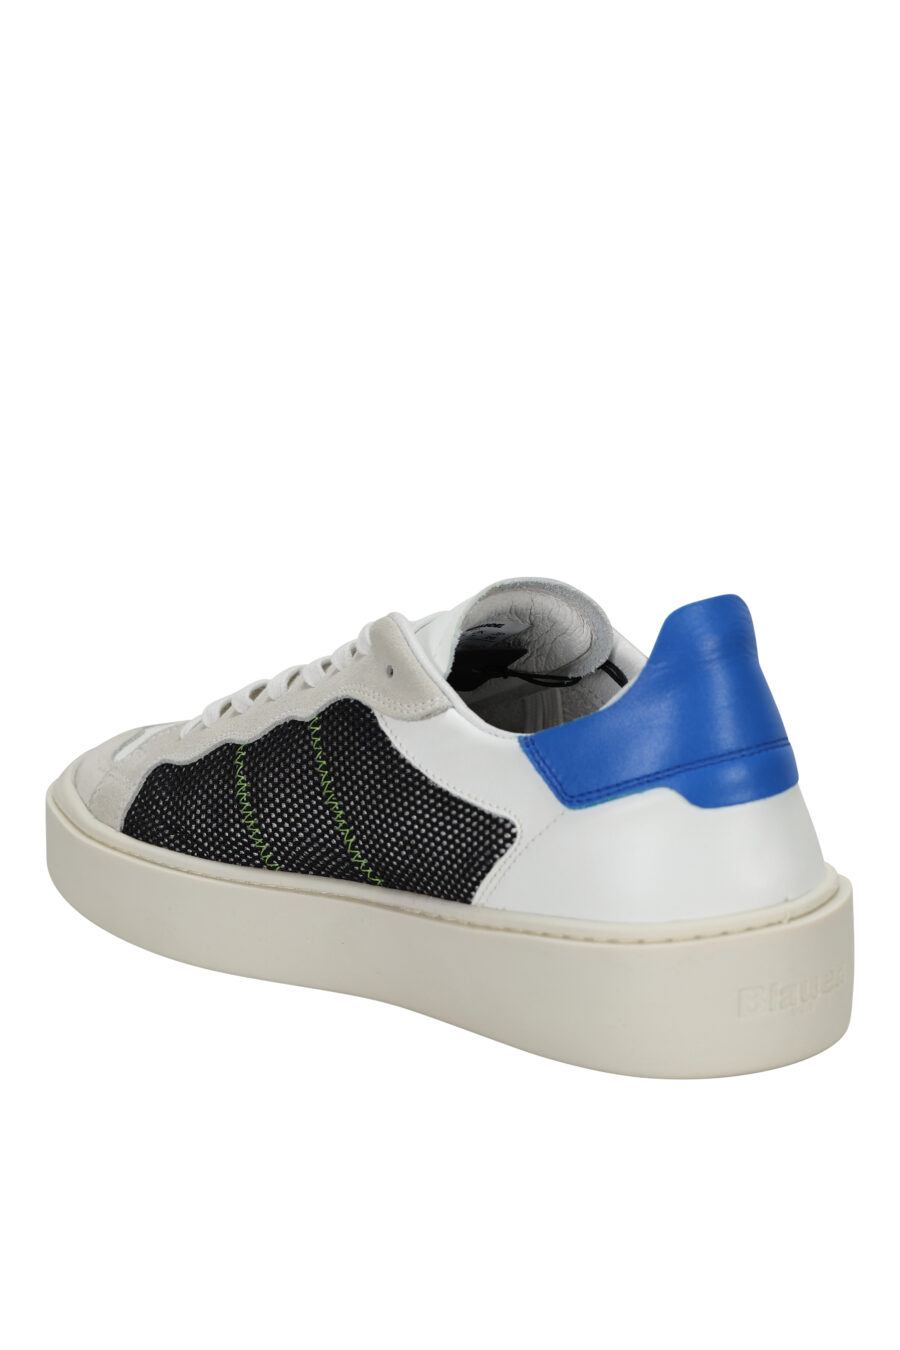 Zapatillas blancas con rejilla negra y detalle azul "staten" - 8058156550964 3